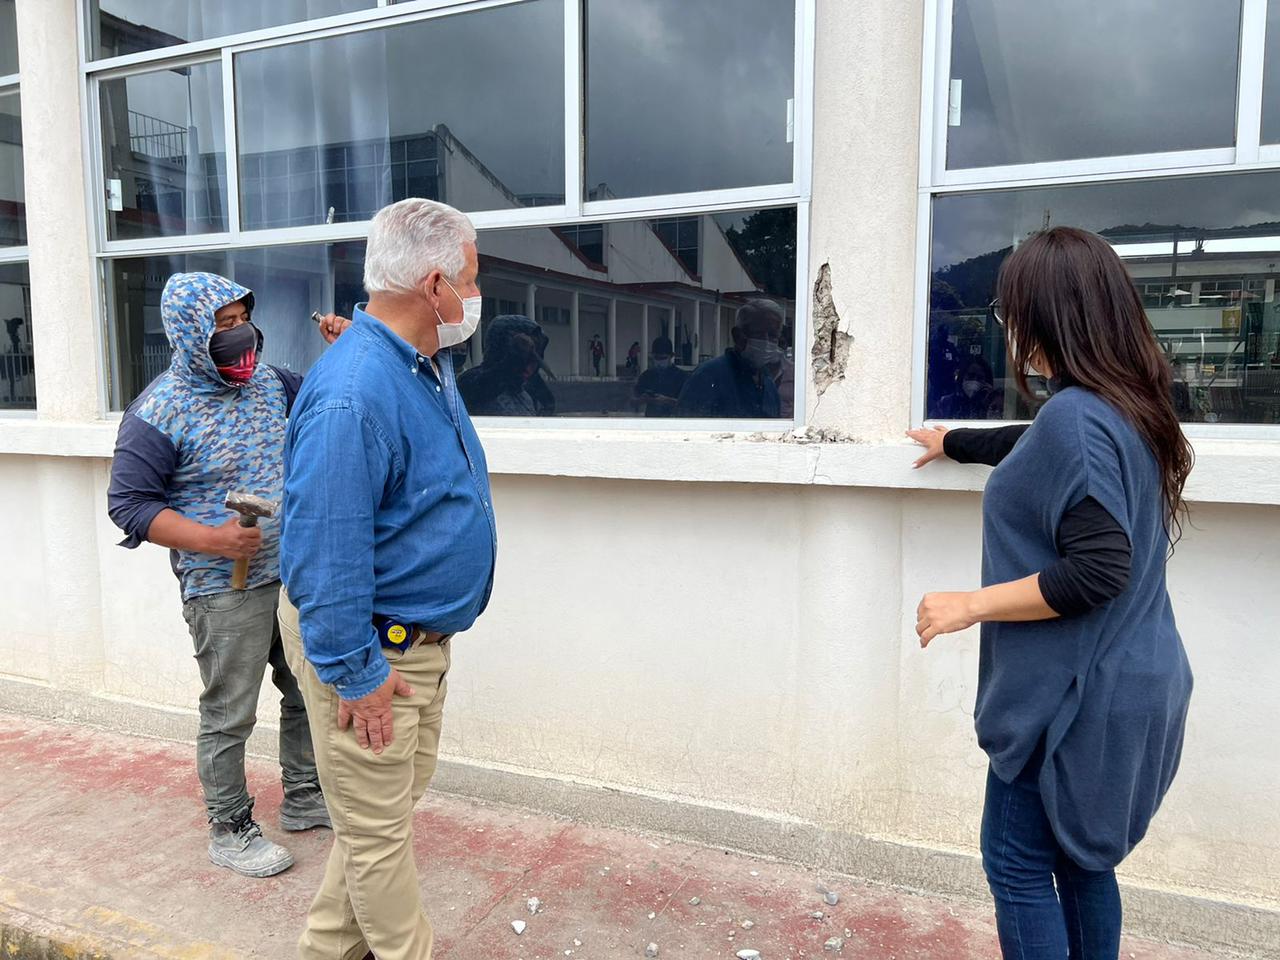 Desde Teziutlán: Centro Escolar presidente Manuel Ávila Camacho presenta graves daños estructurales en muros y columnas